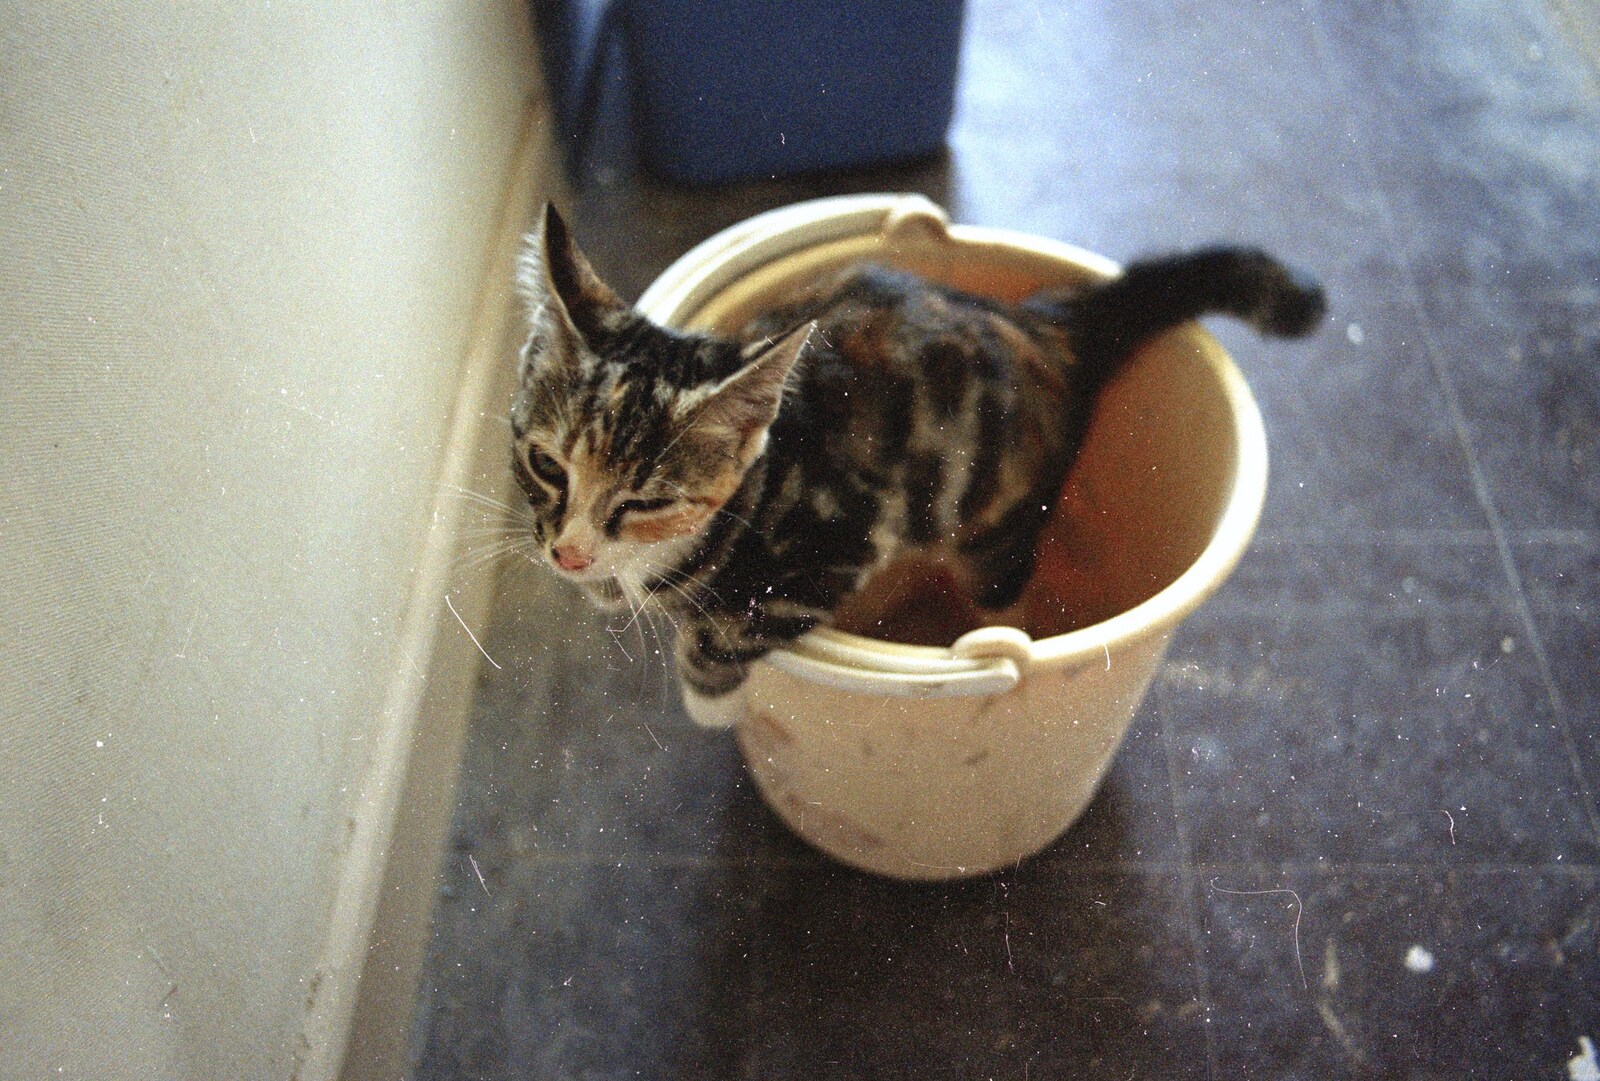 Kitten in a bucket from Tone's Wedding, Mundford, Norfolk - 27th August 1994